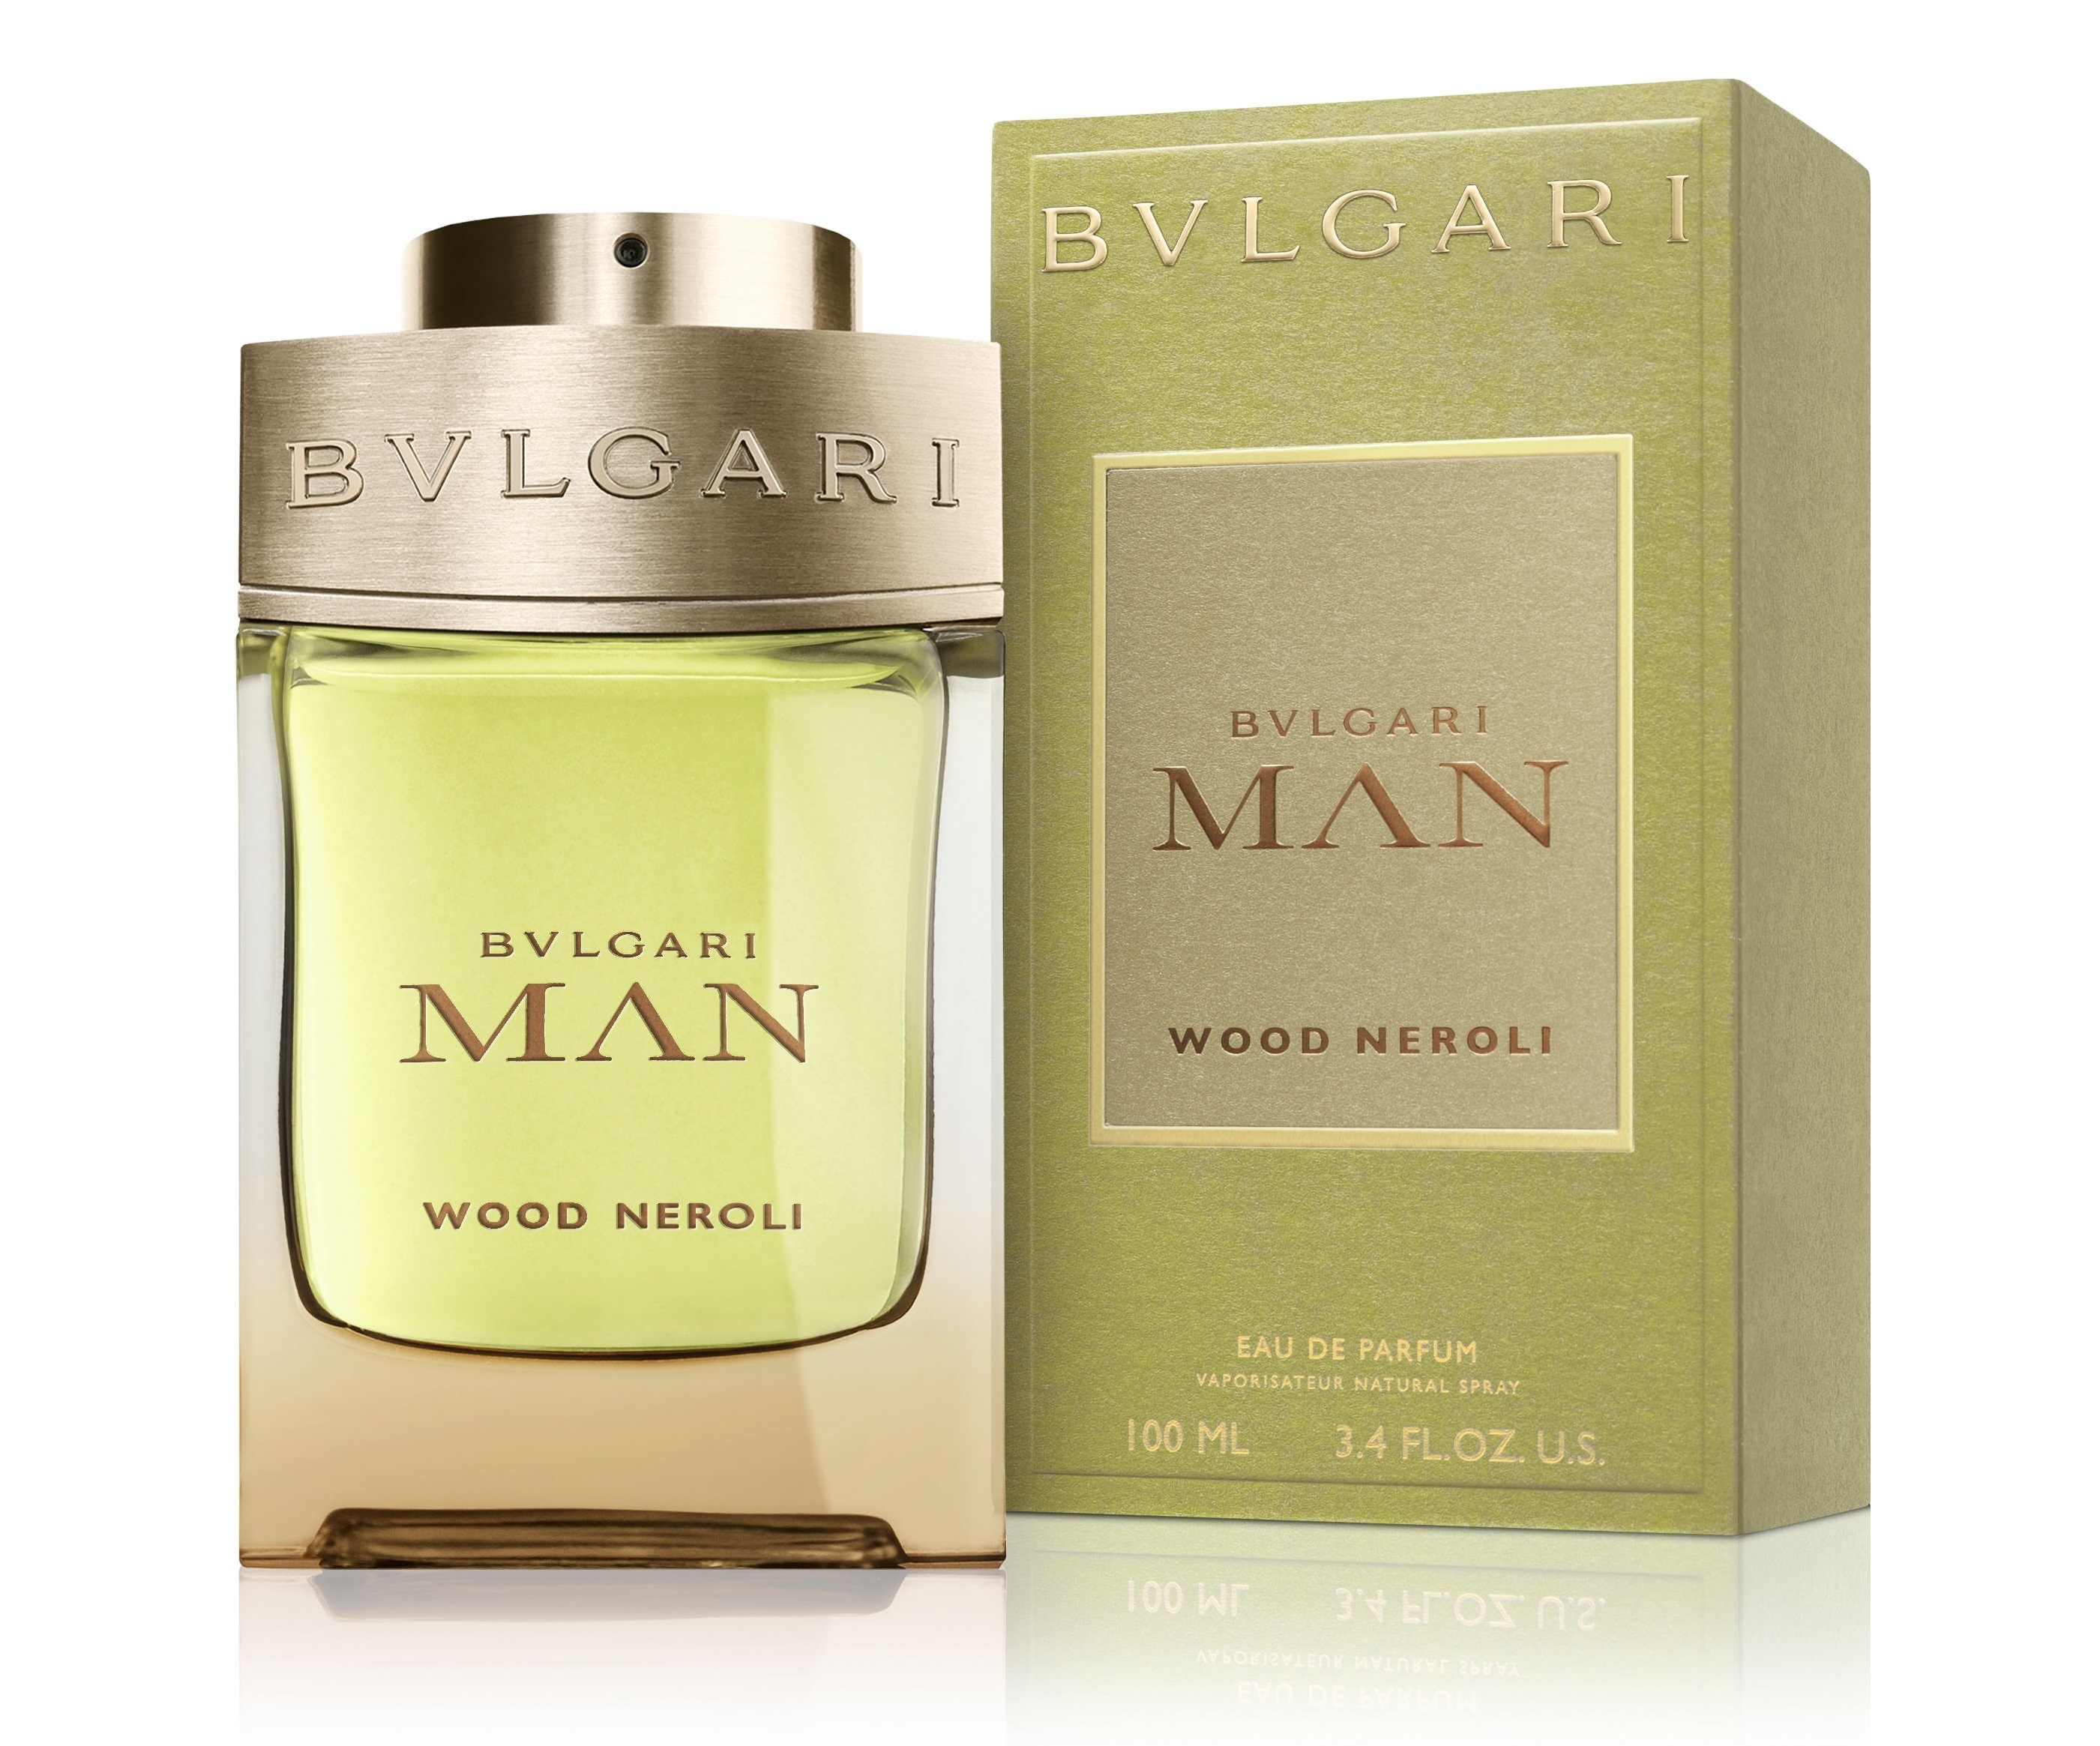 Bvlgari Man Wood Neroli parfémová voda pro muže 100 ml